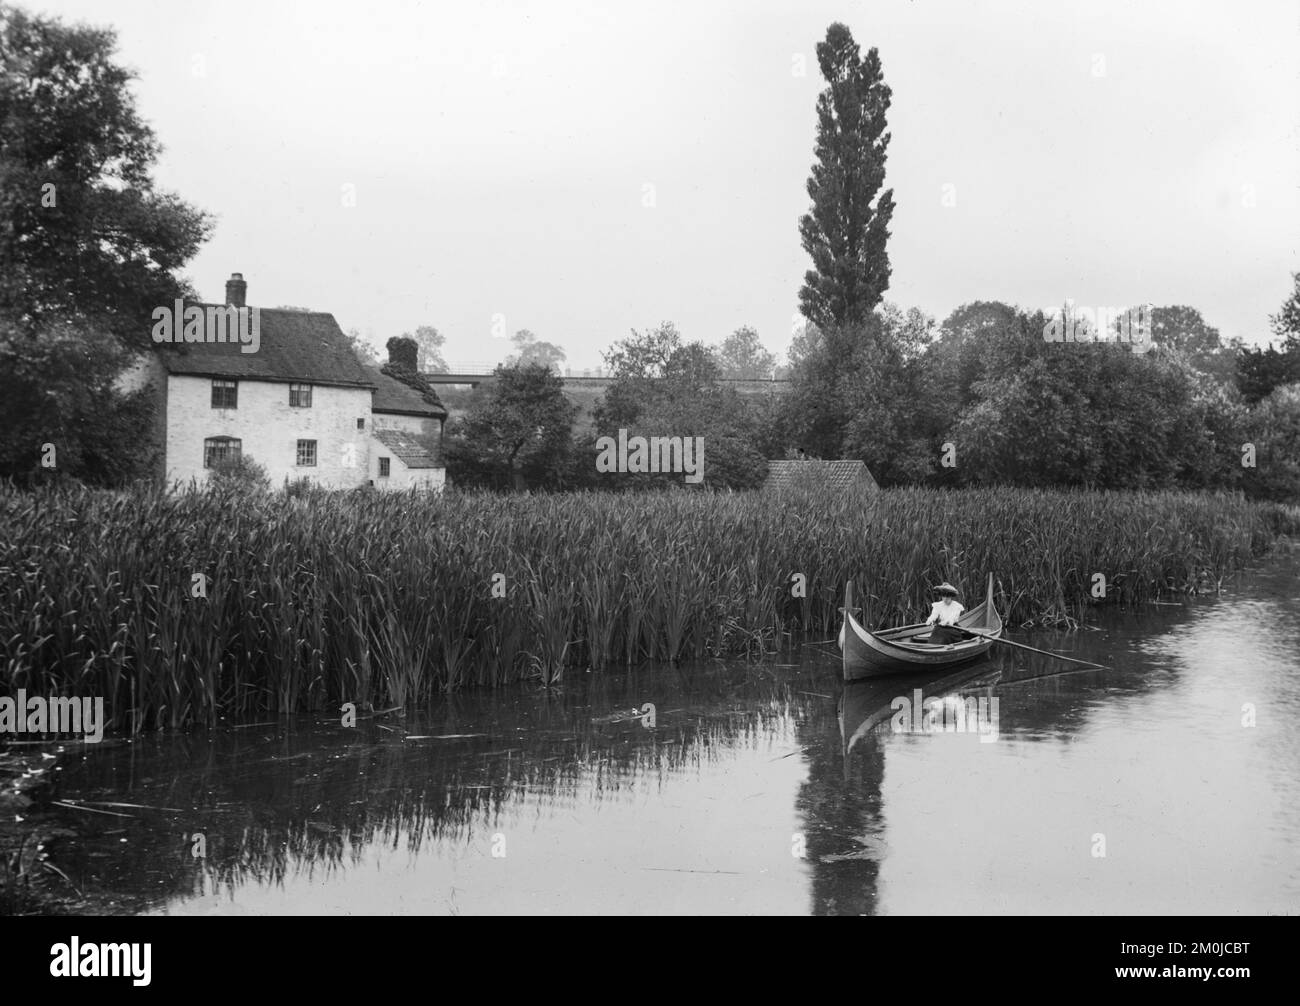 Schwarzweißes englisches Foto aus dem späten 19.. Jahrhundert, das eine Frau in einem Ruderboot auf einem Fluss zeigt, neben einigen großen Anlässen mit einem Haus oder einer Hütte in der Nähe. Stockfoto